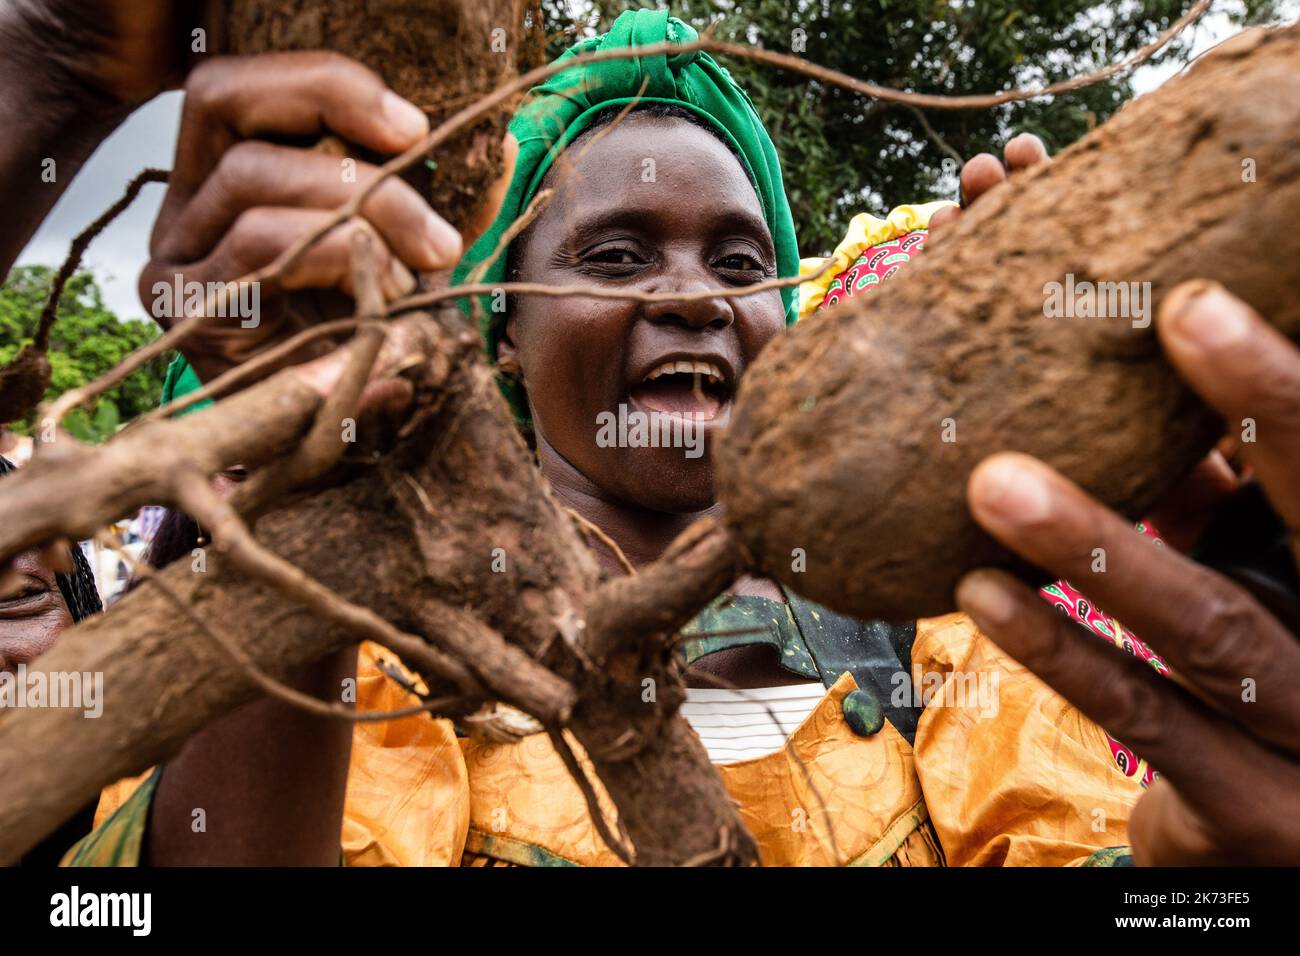 Une femme rurale de Dibang Afura célèbre la Journée internationale montrant un énorme arbuste manioc. La Journée internationale des femmes rurales célébrée au Cameroun et le Ministère de l'autonomisation des femmes et de la famille ont lancé les célébrations à Nguibassal, Centre Cameroun. La Journée internationale a été créée par les Nations Unies et observée pour la première fois en 2008. Parmi les célébrants, on comptait près de 2000 femmes rurales de communautés comme Ngog-Mapubi, Bondjock, Makak, Dibang et d'autres. Dans un monde où les disparités entre les sexes se sont intensifiées et où les femmes sont confrontées à des problèmes de propriété du bétail, égal à p Banque D'Images